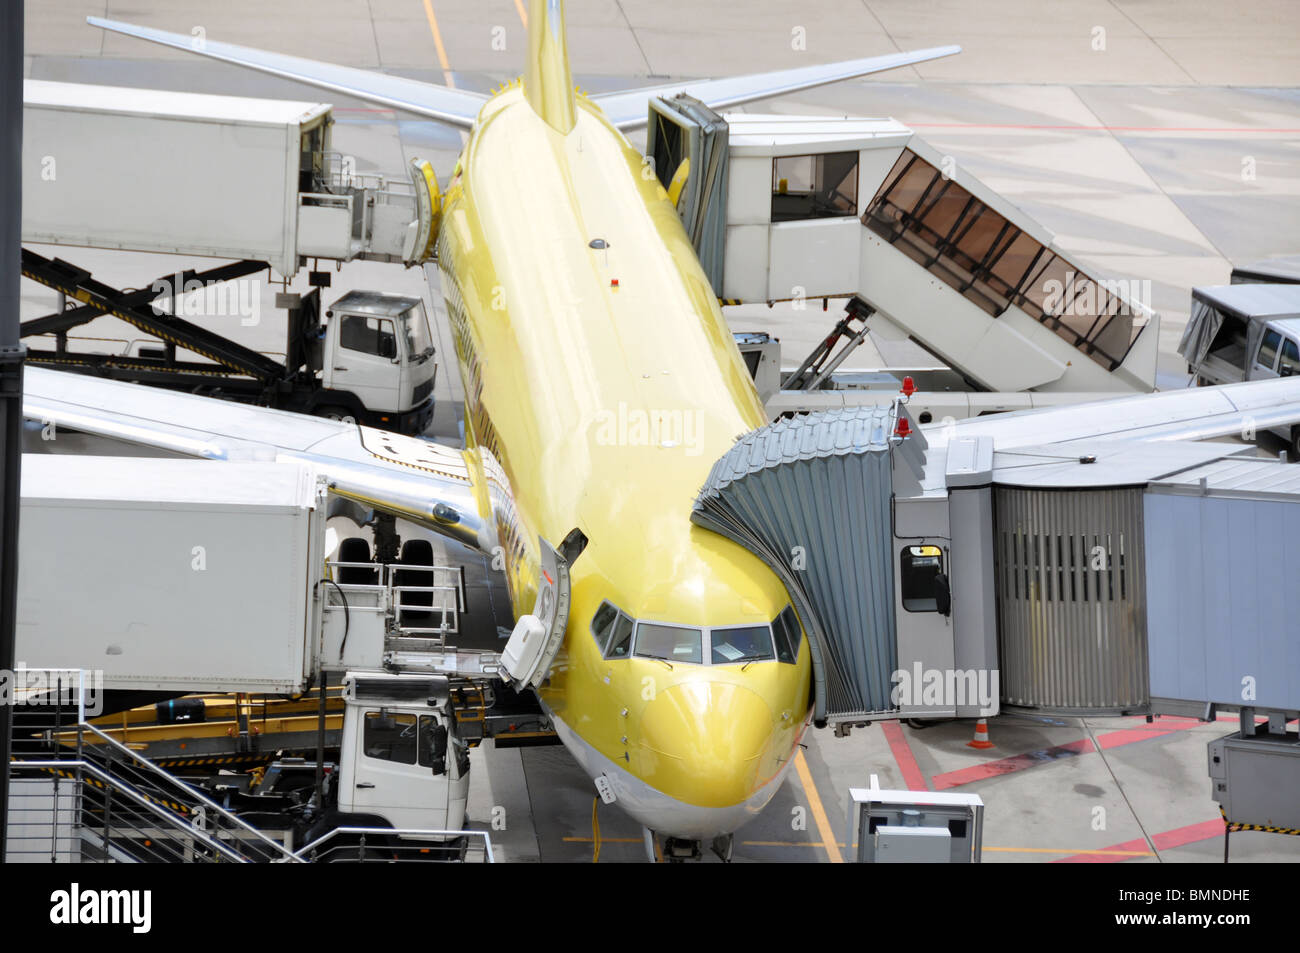 Mittlerer Größe Flugzeug am Gate - catering Service-Checks durchgeführt wird geliefert, gewartet wird Stockfoto